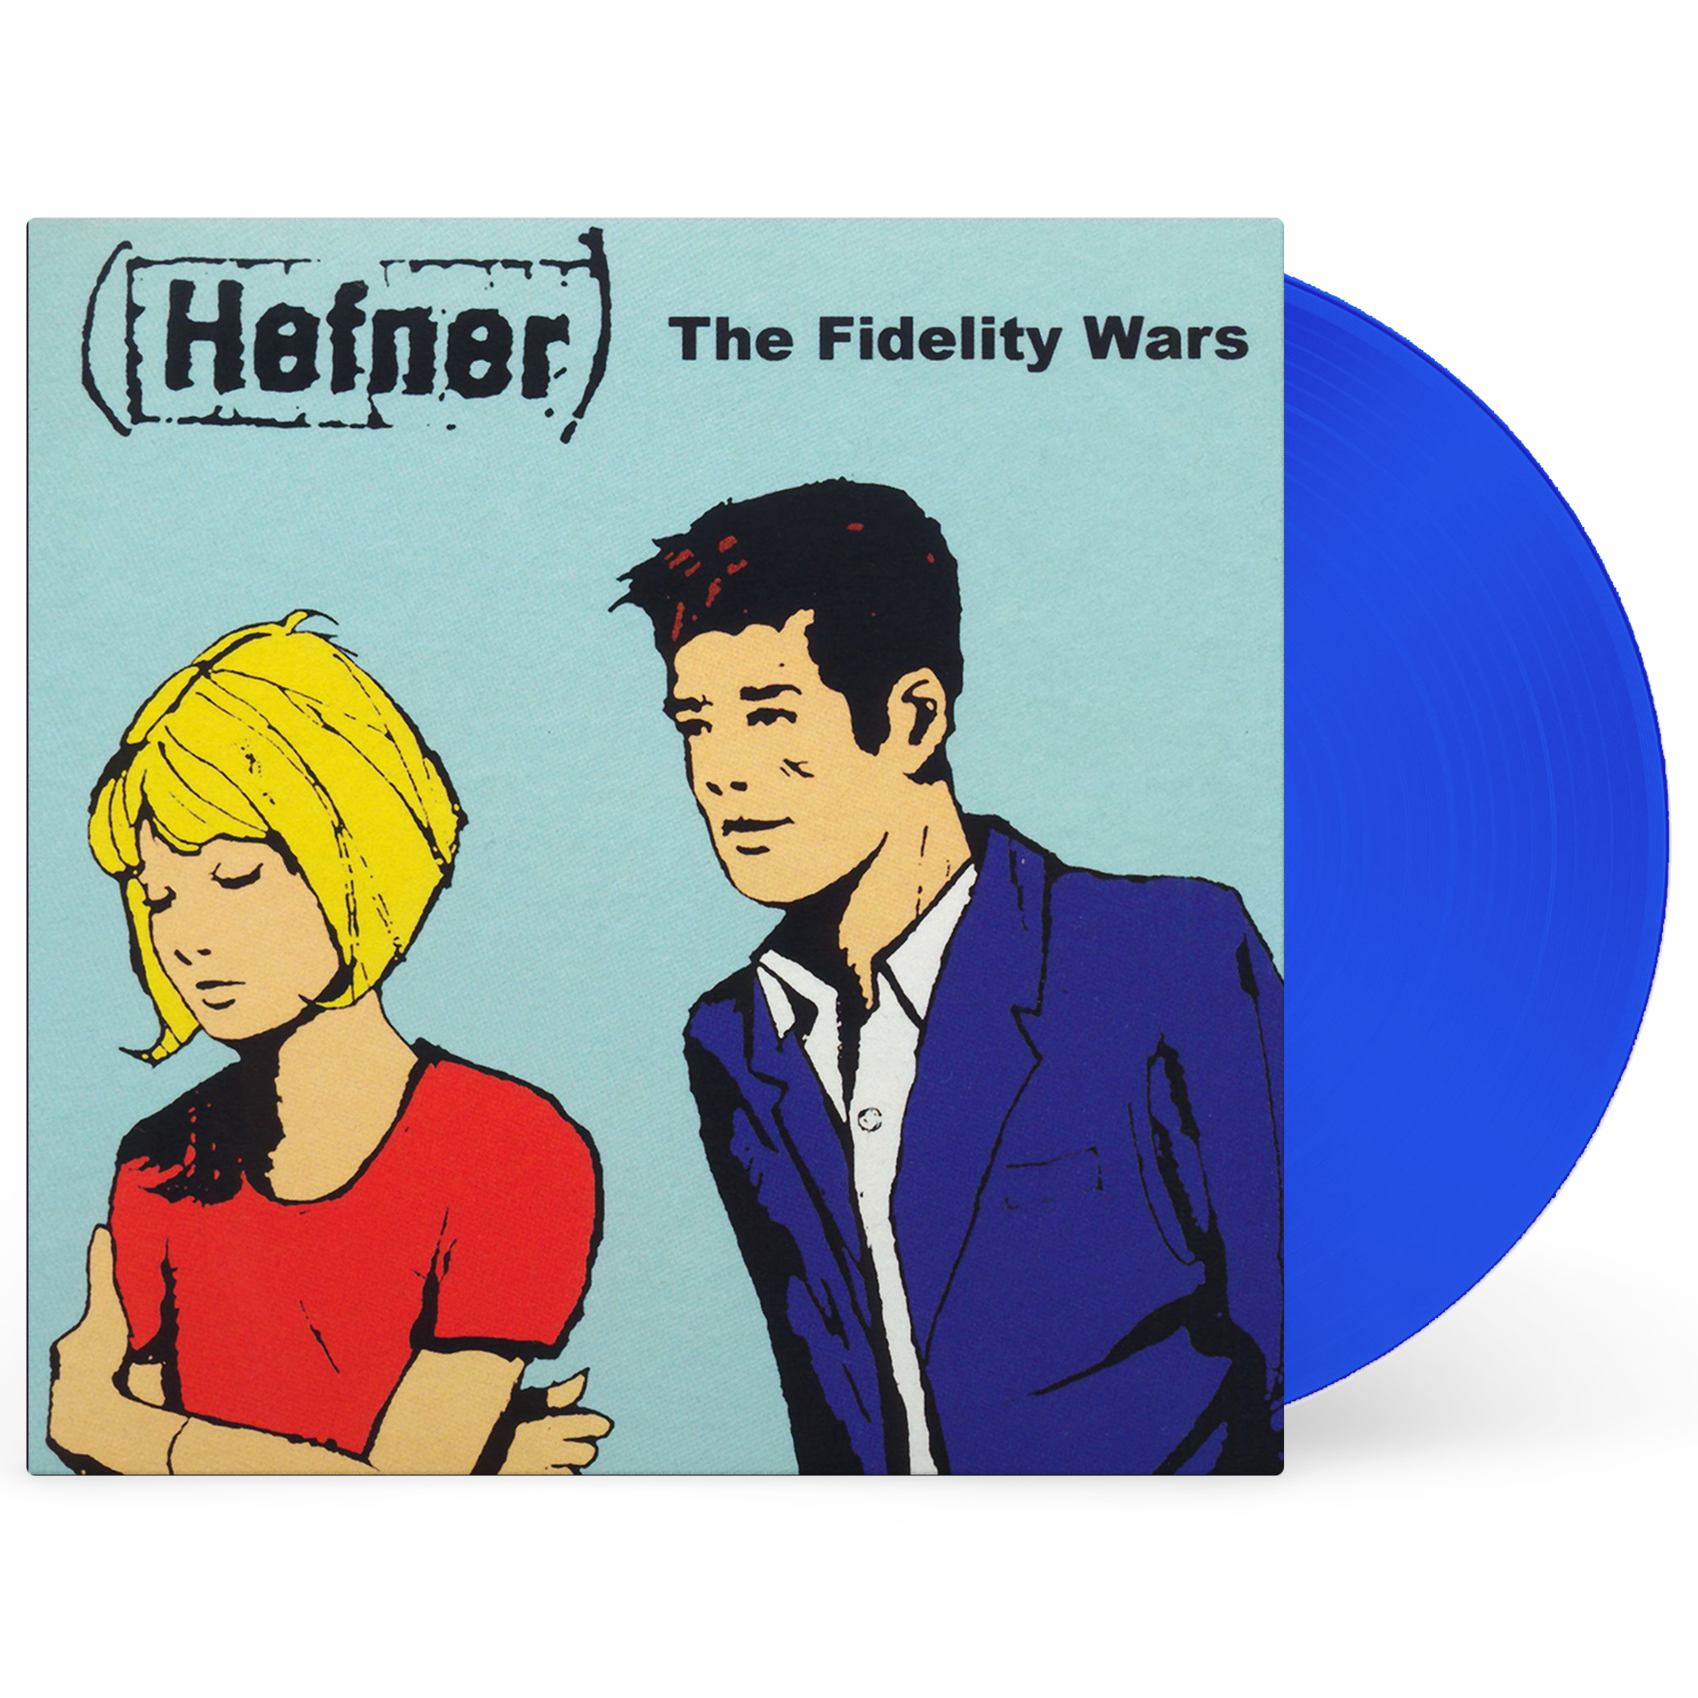 Album artwork for The Fidelity Wars by Hefner